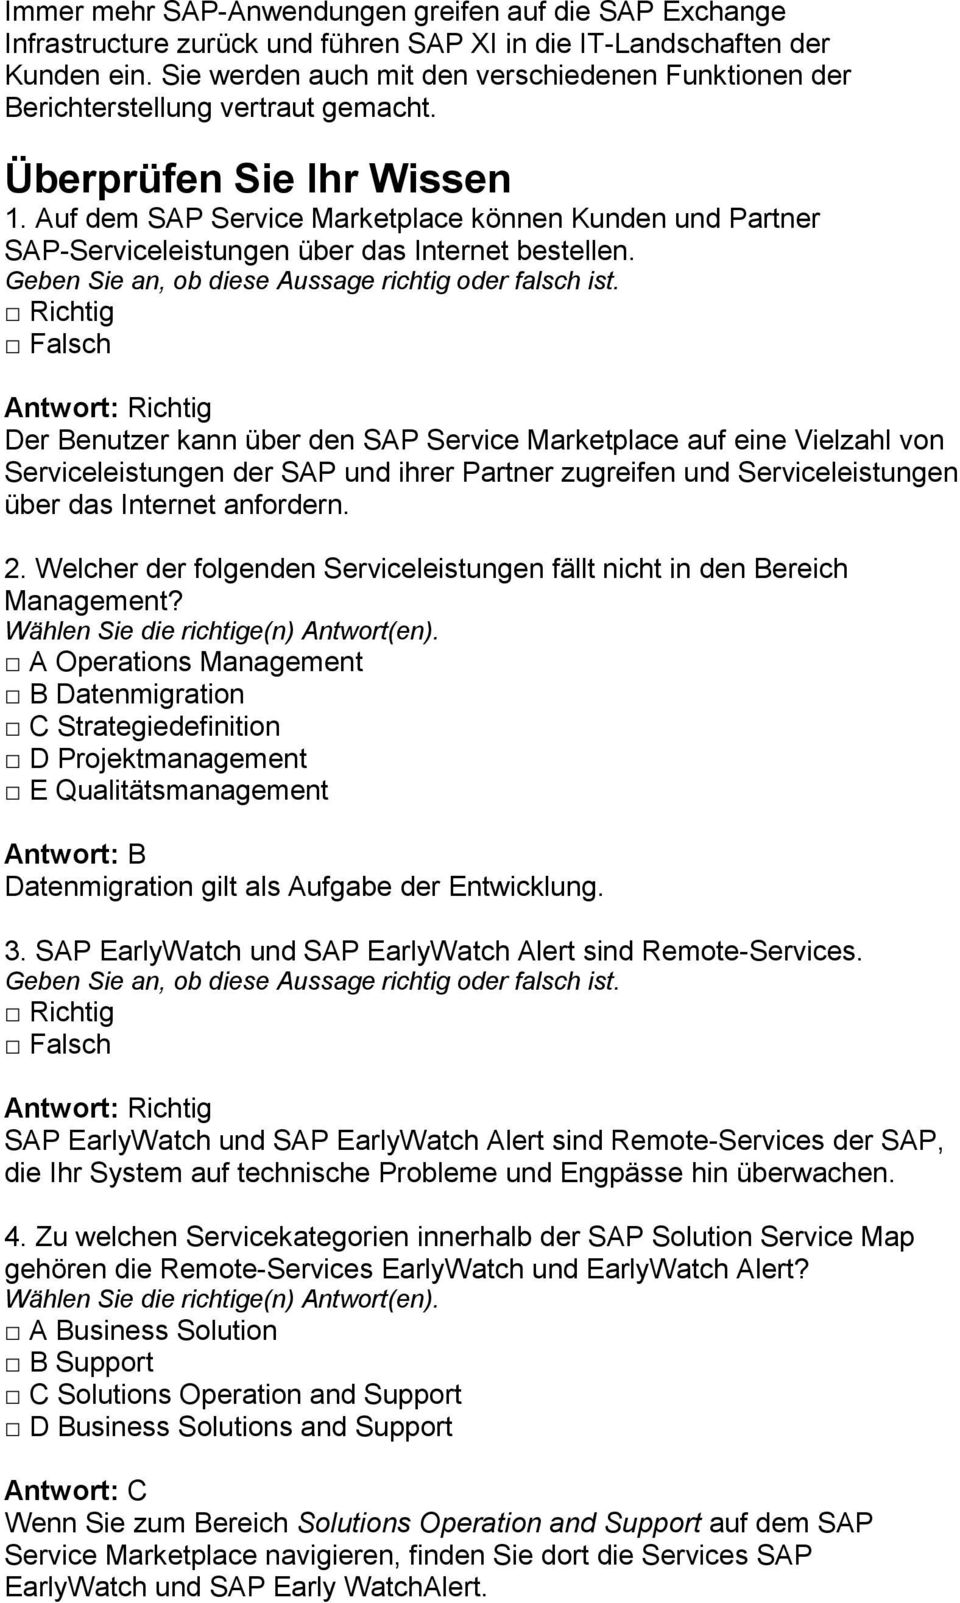 Auf dem SAP Service Marketplace können Kunden und Partner SAP-Serviceleistungen über das Internet bestellen.